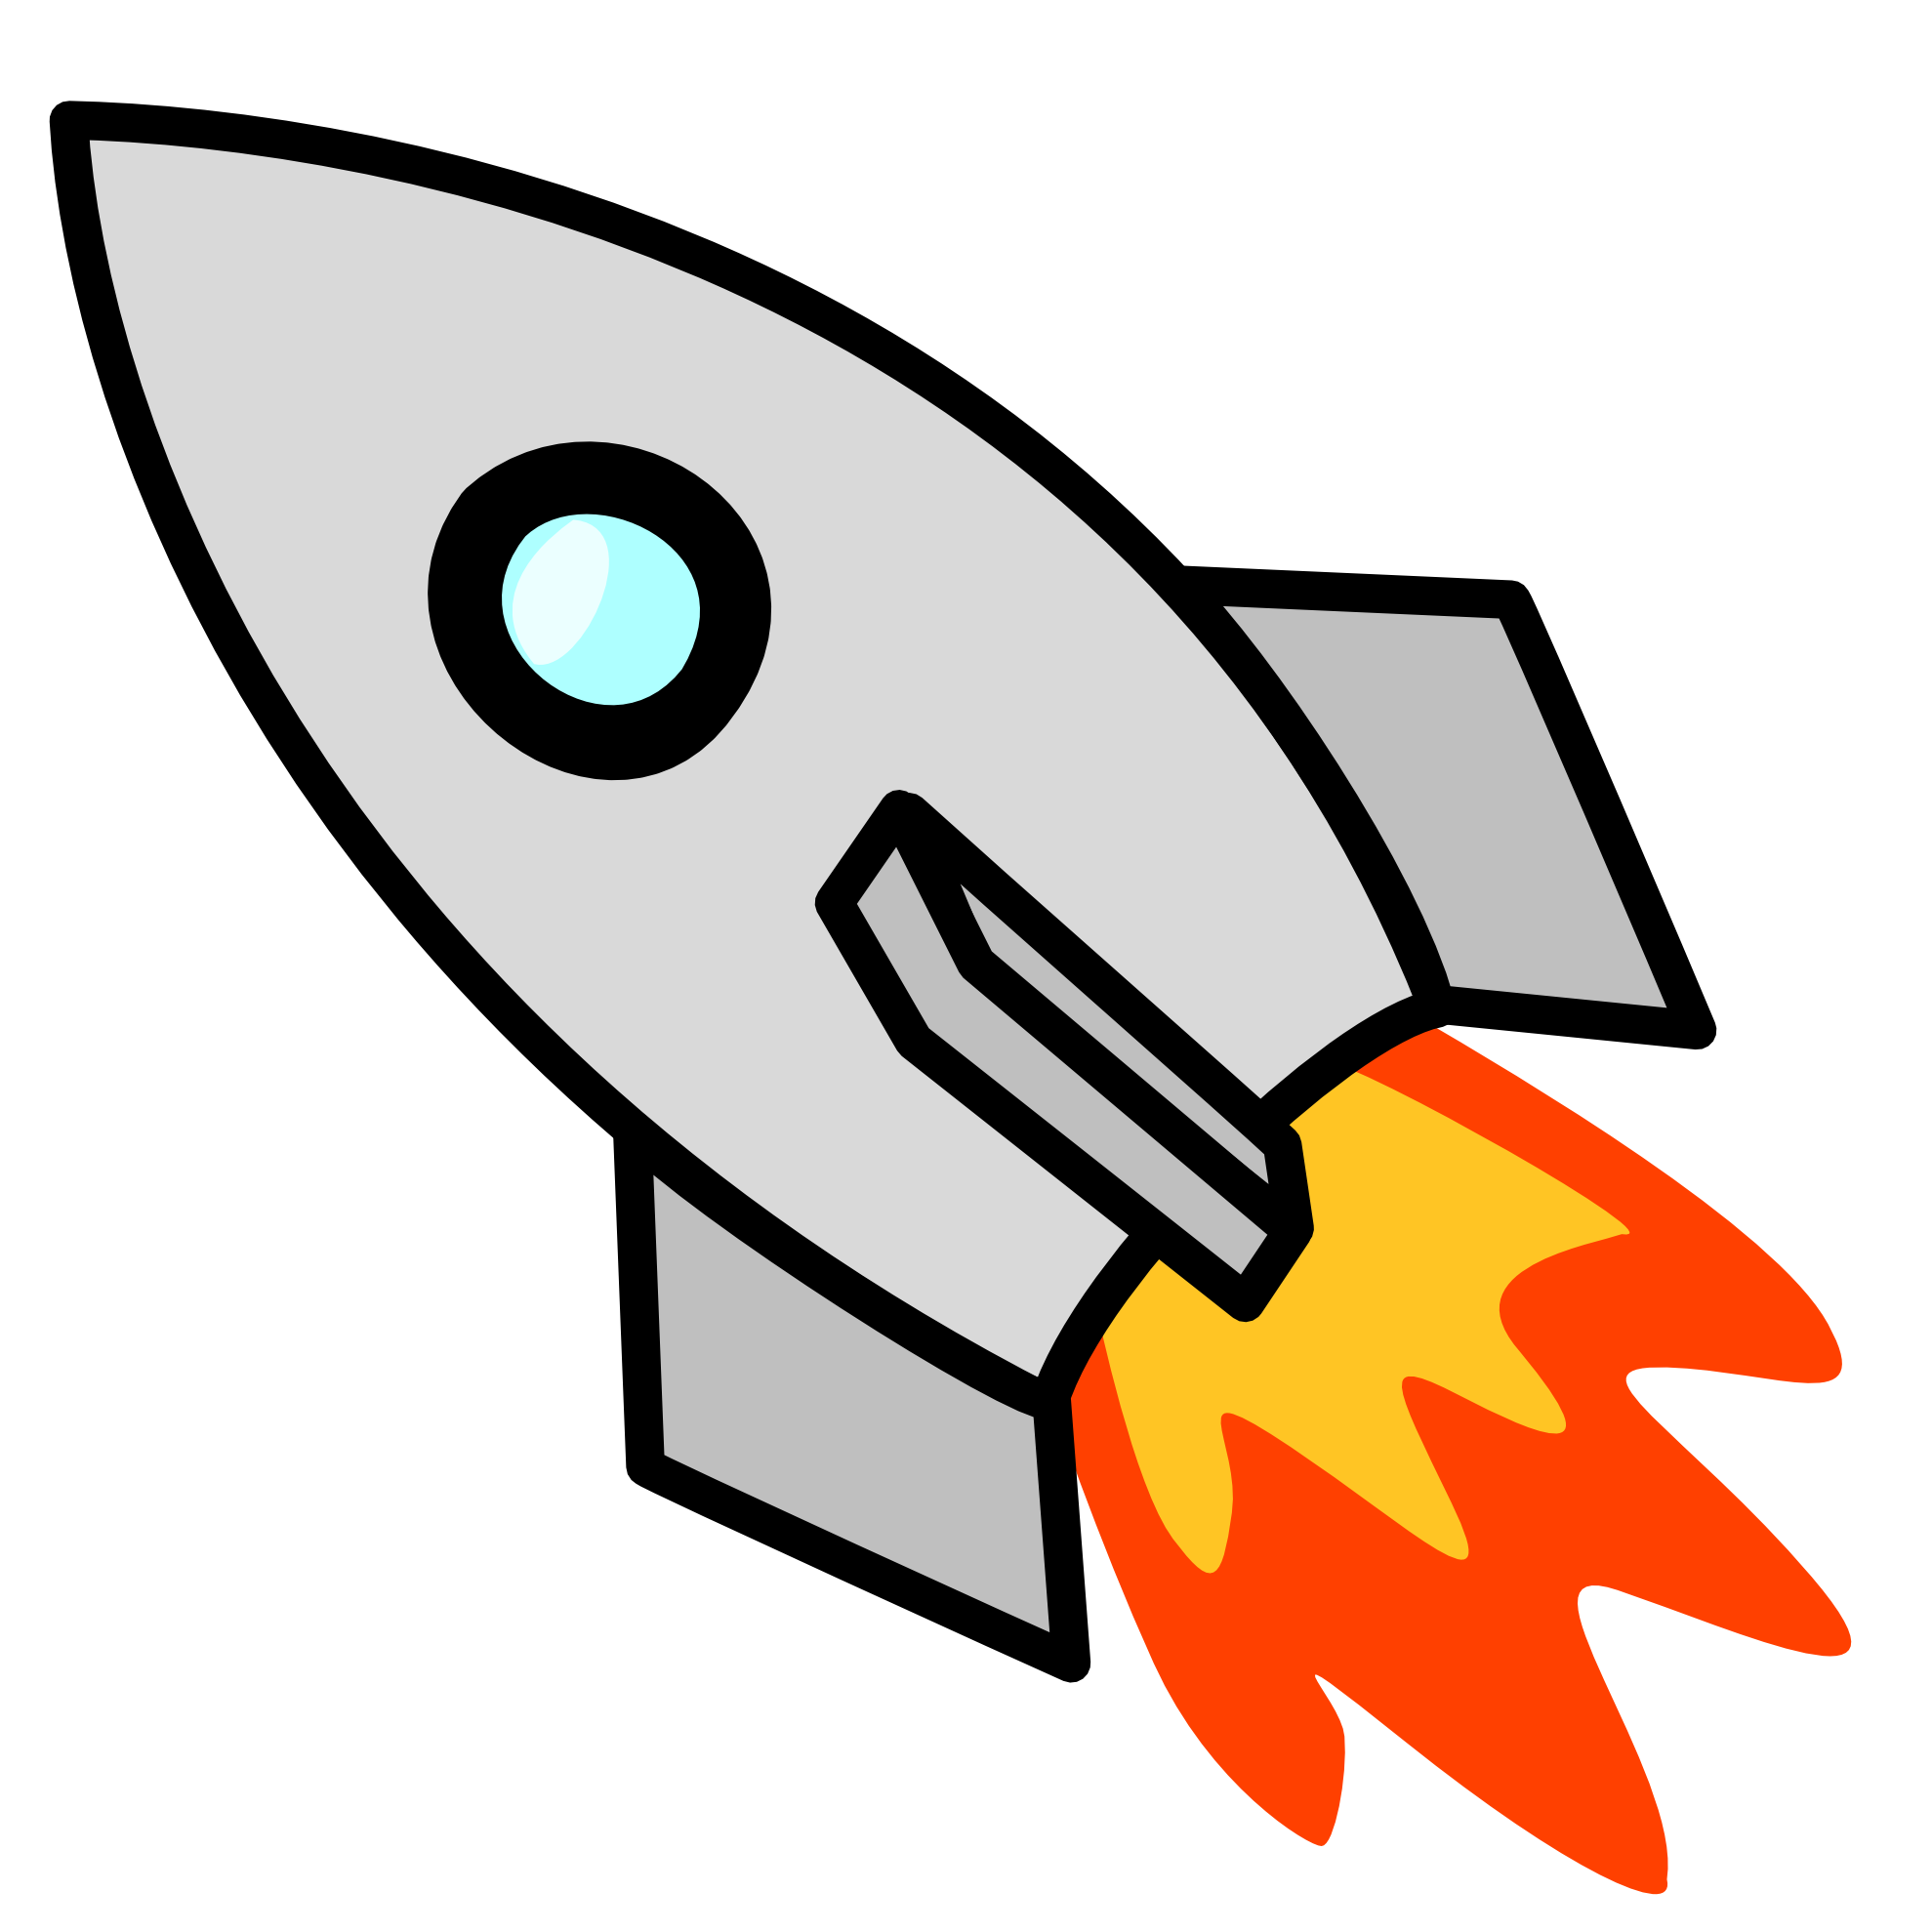 Spaceship space ship clip art moreover cartoon rocket clip art ...